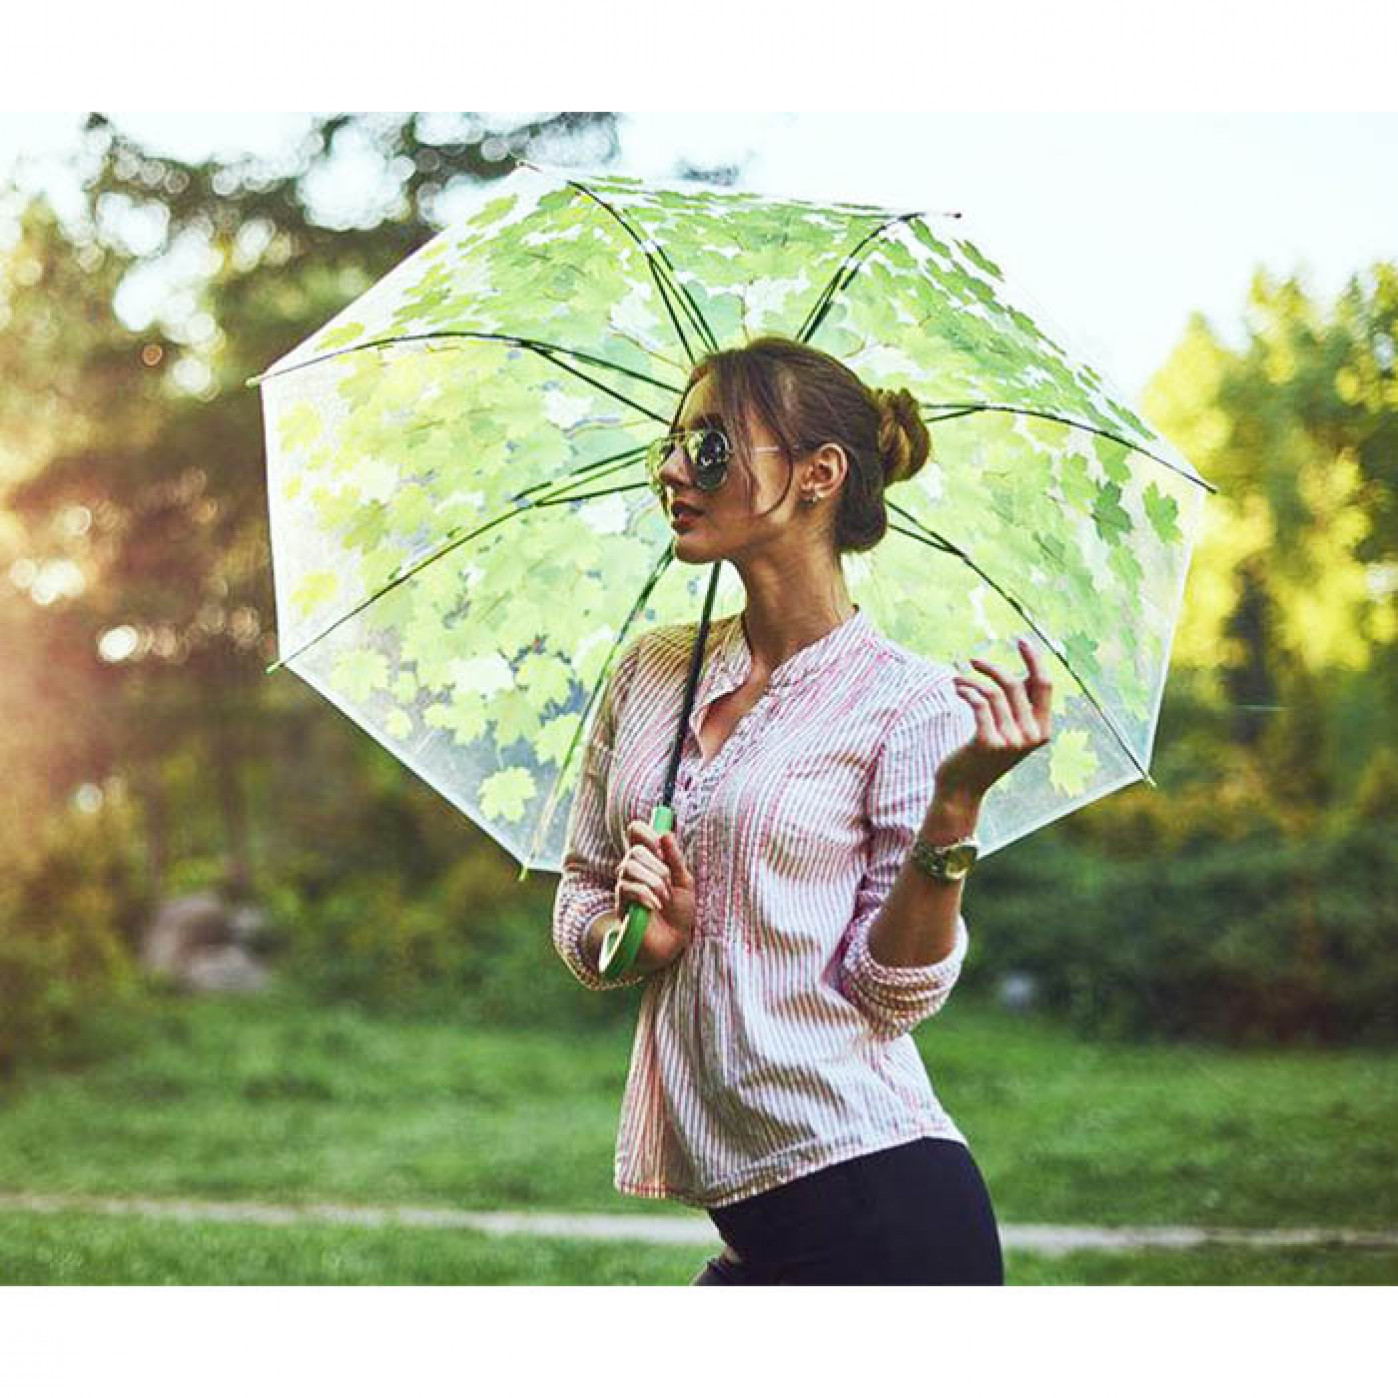 Весенний зонтик. Фотосессия с зонтом летом. Девушка с прозрачным зонтом. Зонт для летней фотосессии. Девушка с зонтом летом.